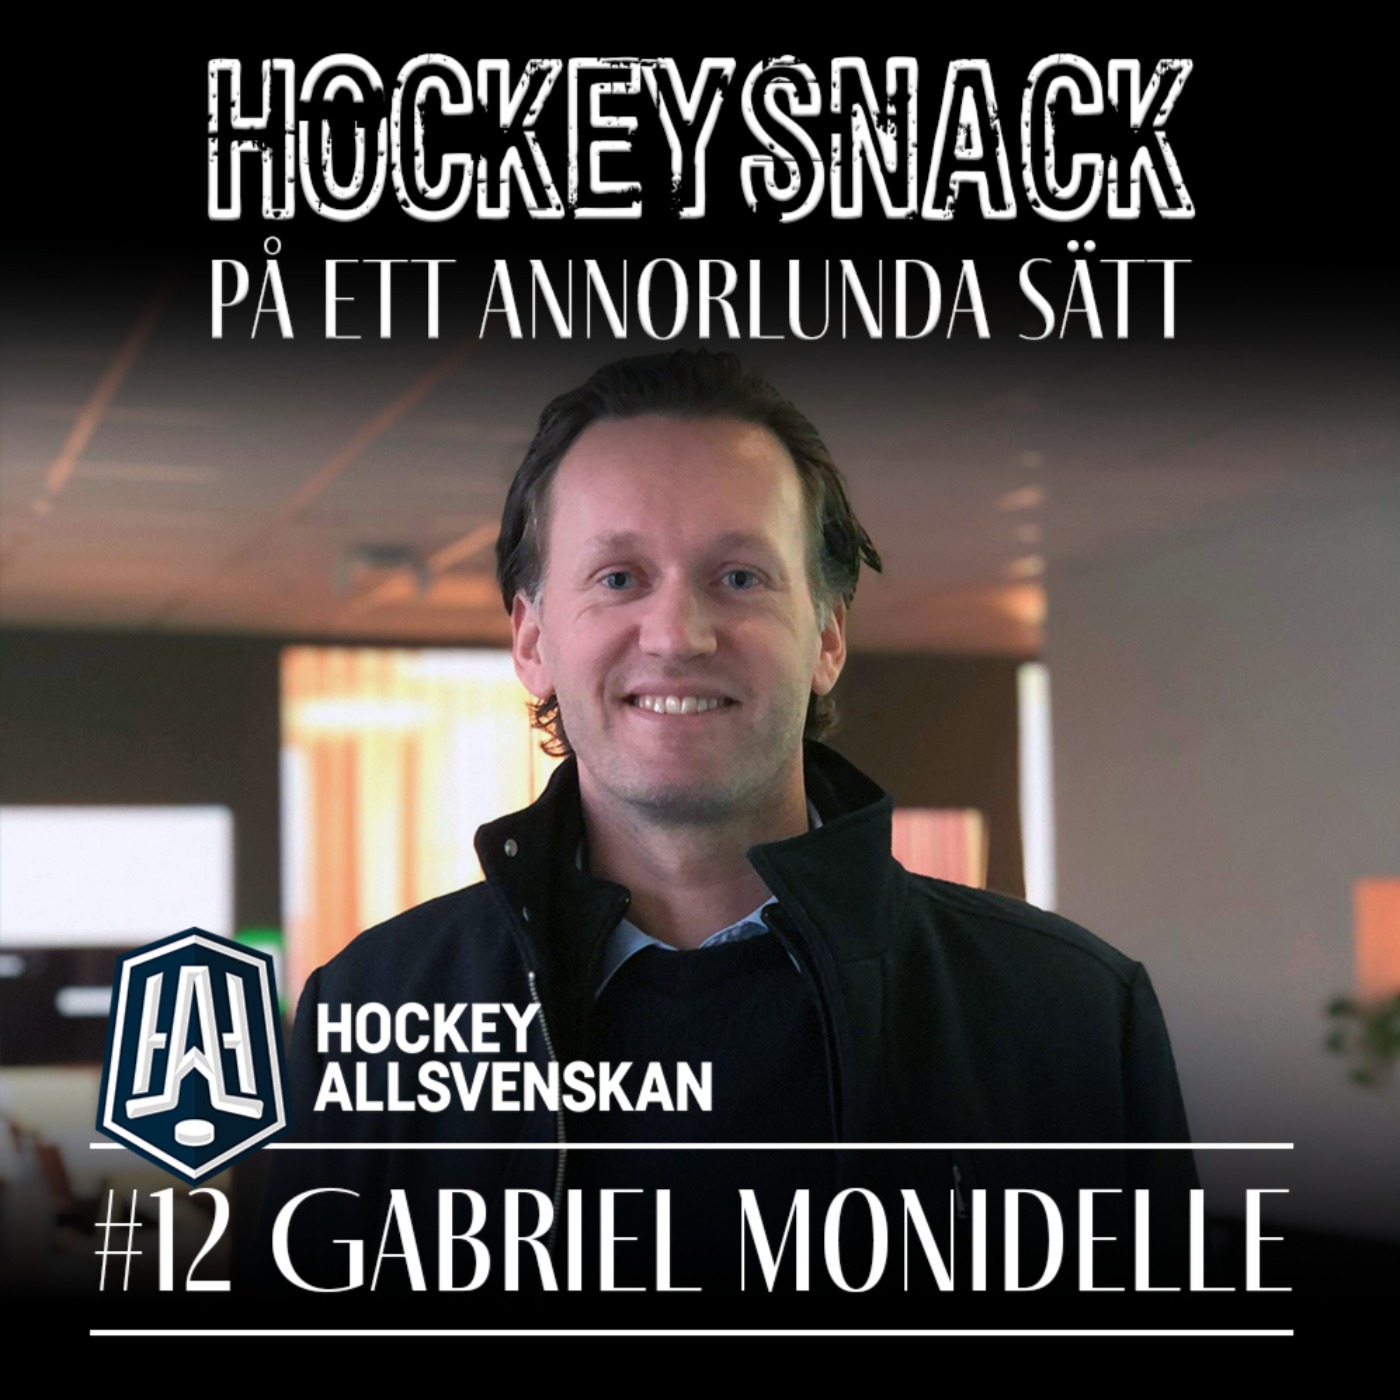 #12 VD för Hockeyallsvenskan med Gabriel Monidelle